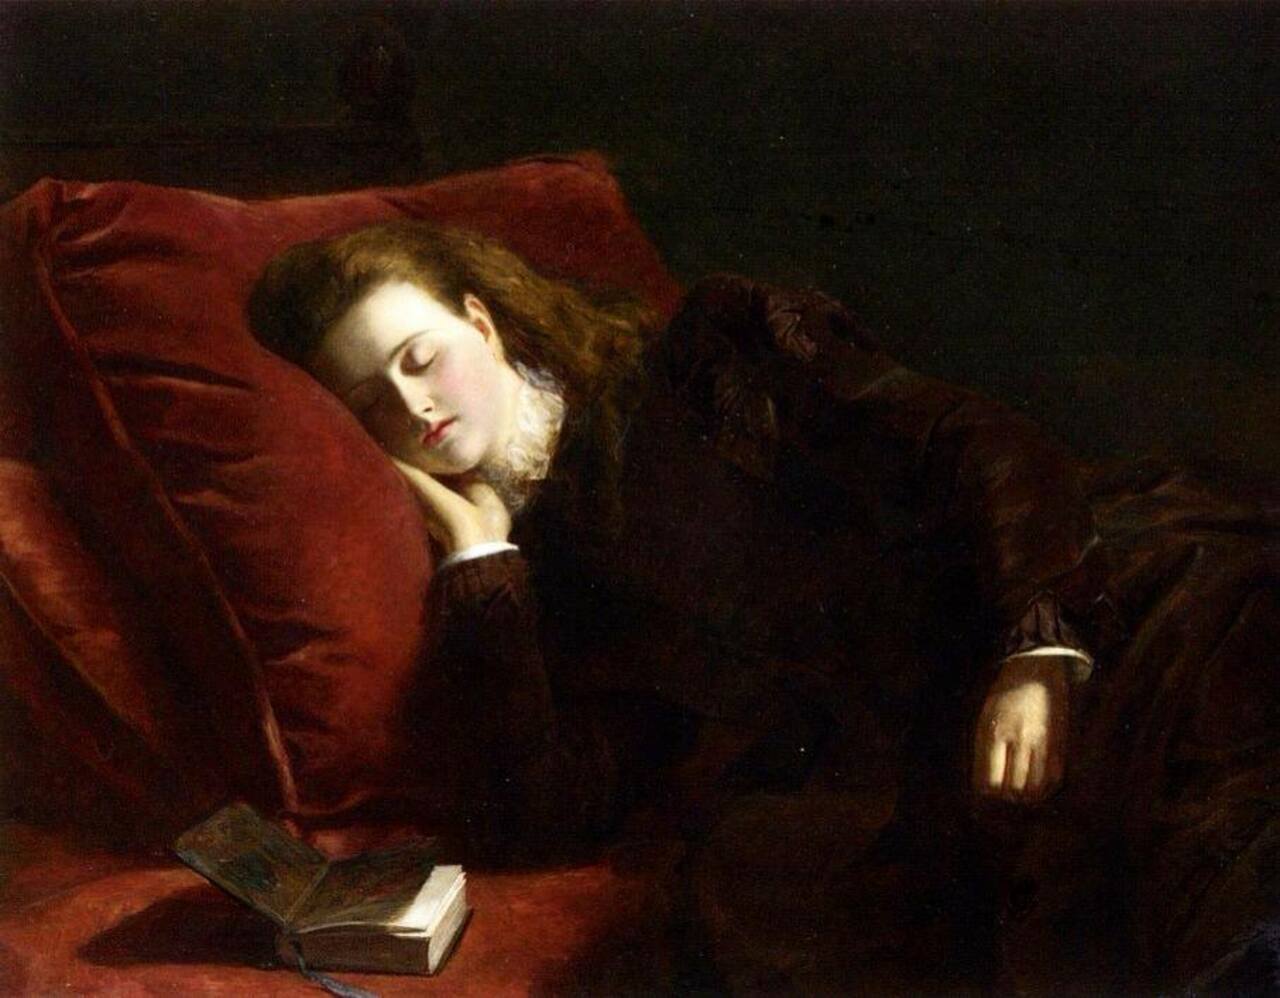 RT @Anabolenaaa: William Powell Frith (1819-1909).#art #painting  Sleep (1873) http://t.co/kIXjTJjtZI